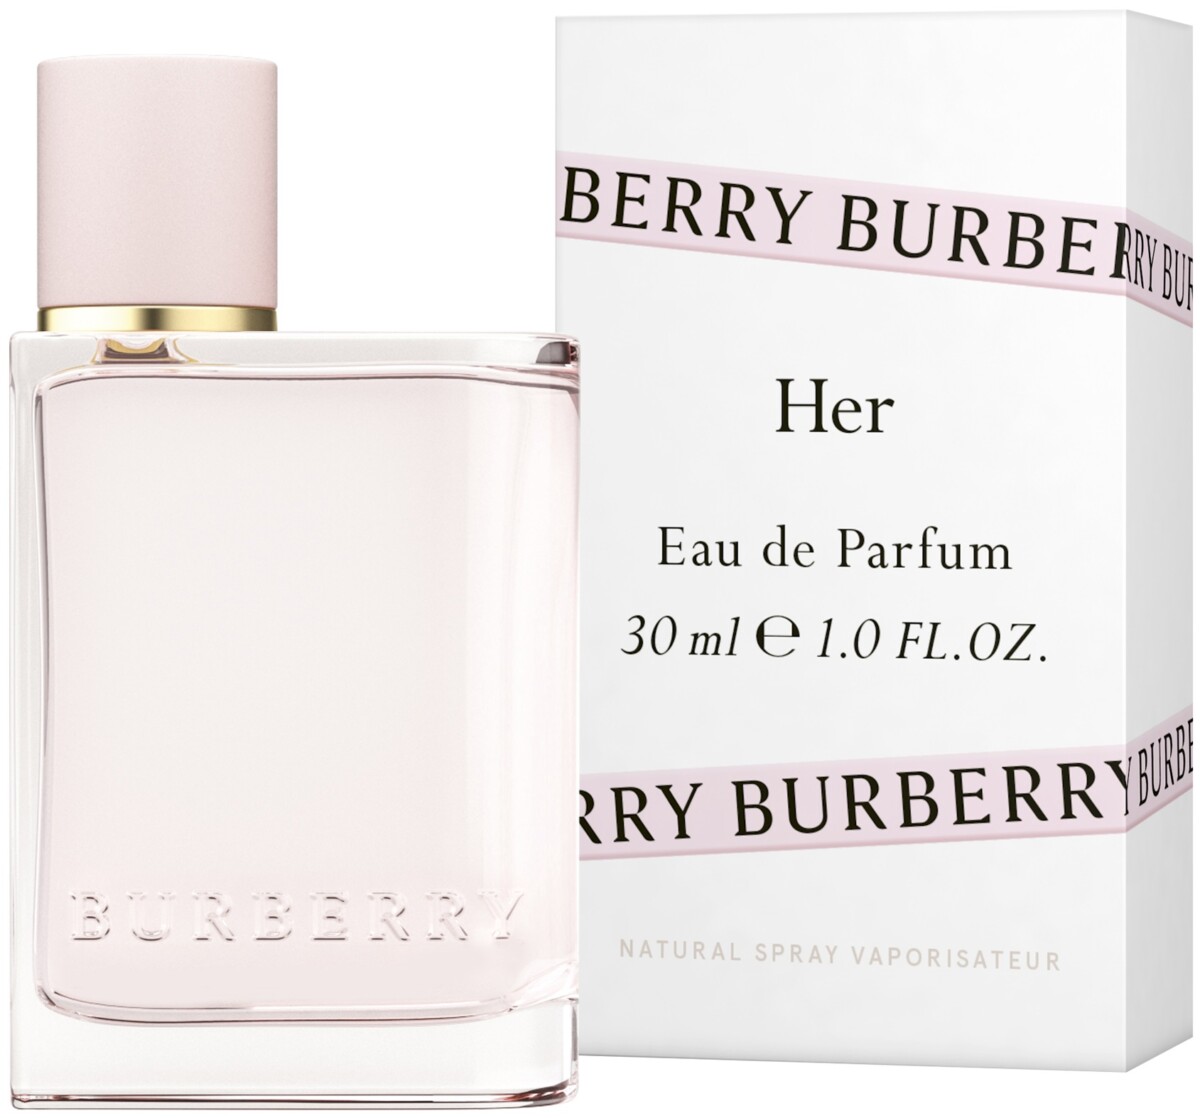 burberry-her-eau-de-parfum-wants-innkjøp-lyko-sminke-hudpleie-hudprodukter-hudrens-anbefaler-favoritter-hudfavoritter-sminkefavoritter-isalicious-isalicious1-isalicious.blogg.no-skjønnhet-blogger-